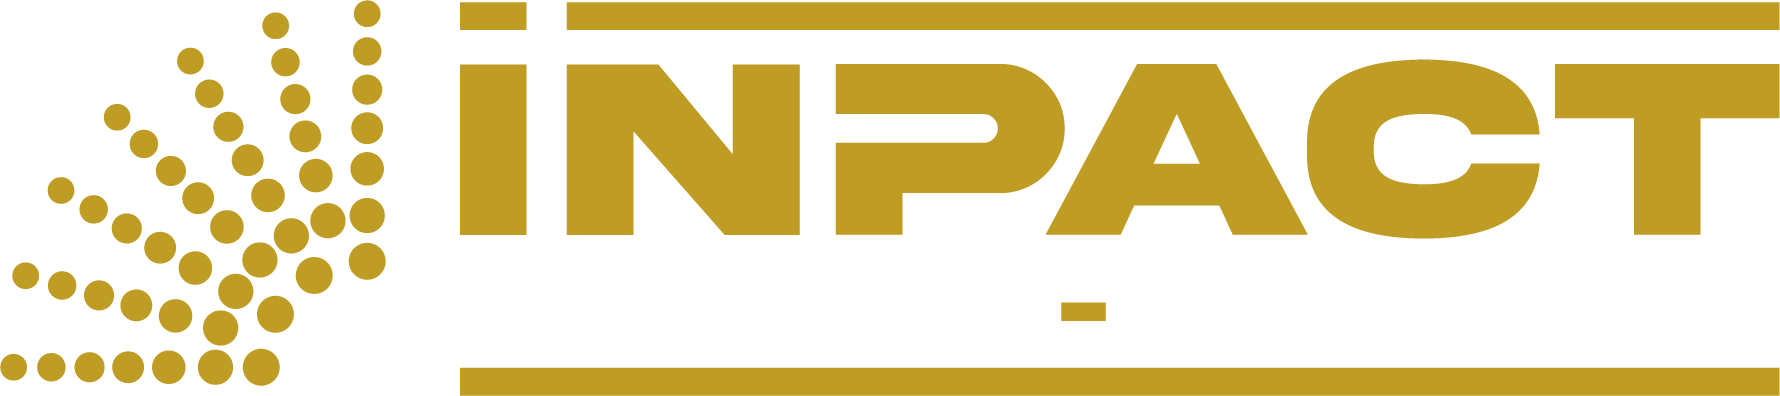 inpact powder coating business logo